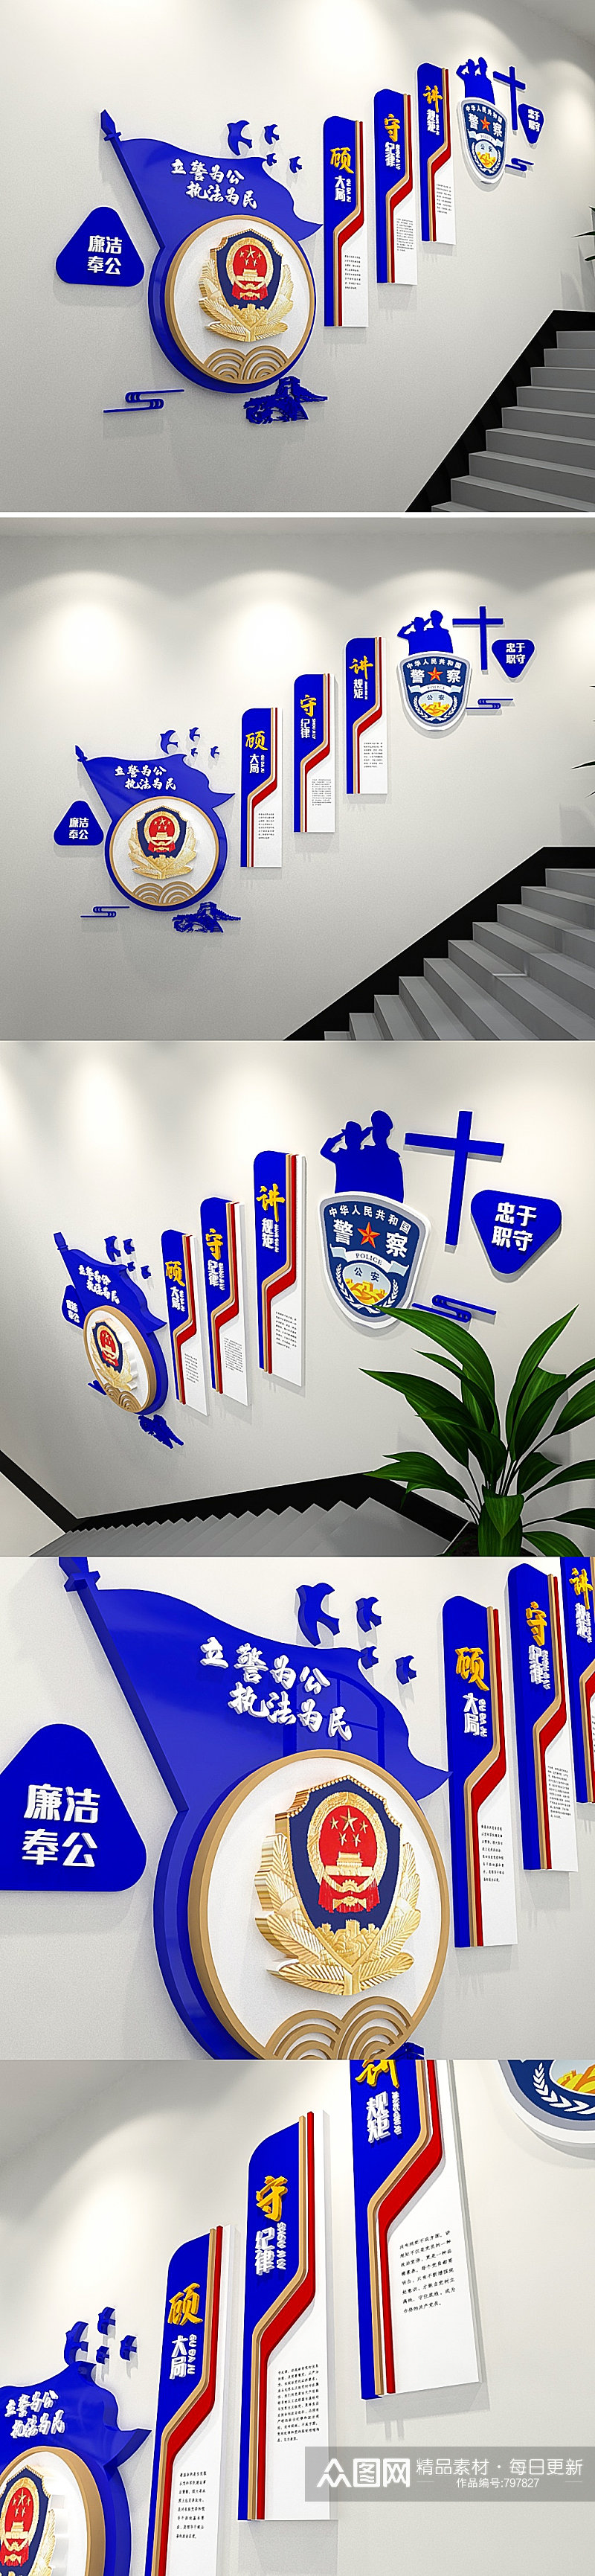 蓝色3D立体蓝色公安局交警警营楼梯文化墙素材